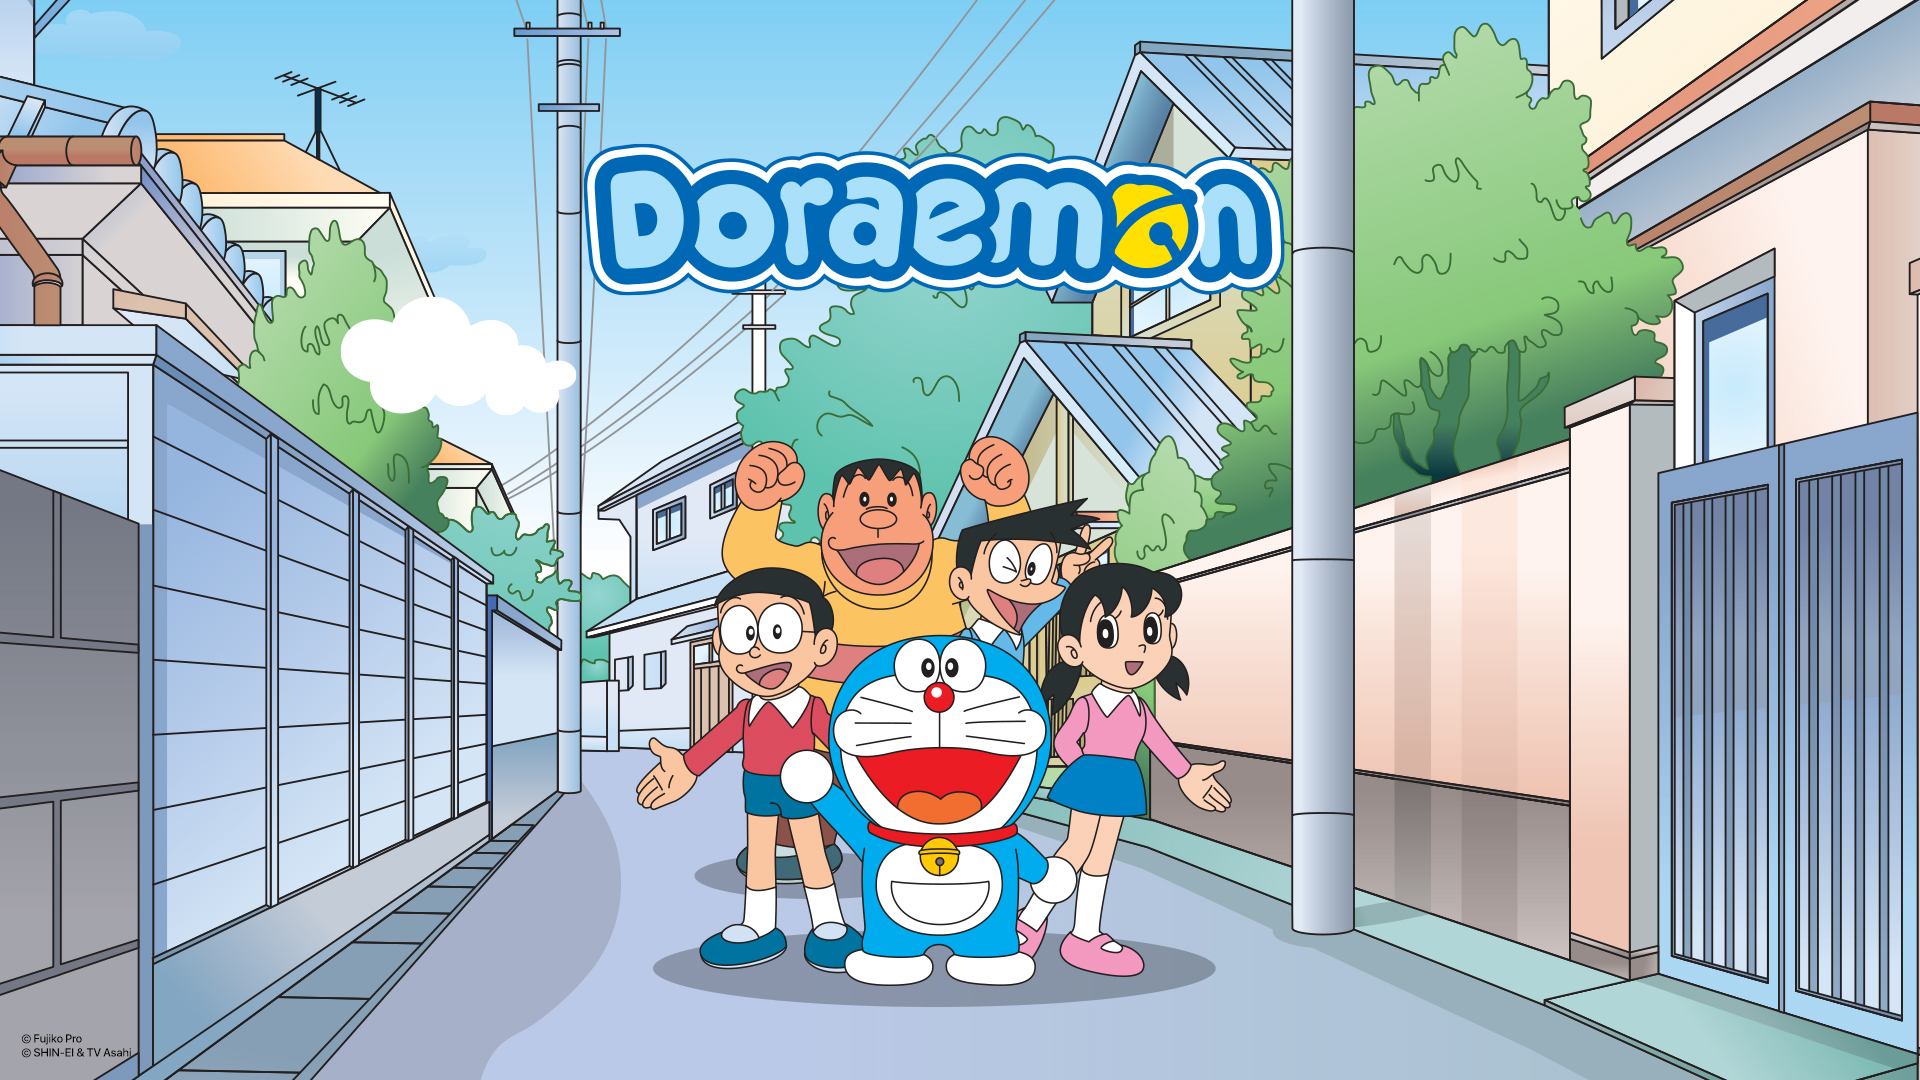 Phim Doraemon Tiếng Việt: Hành Trình Về Quá Khứ Để Sáng Tạo Tương Lai Tươi Sáng